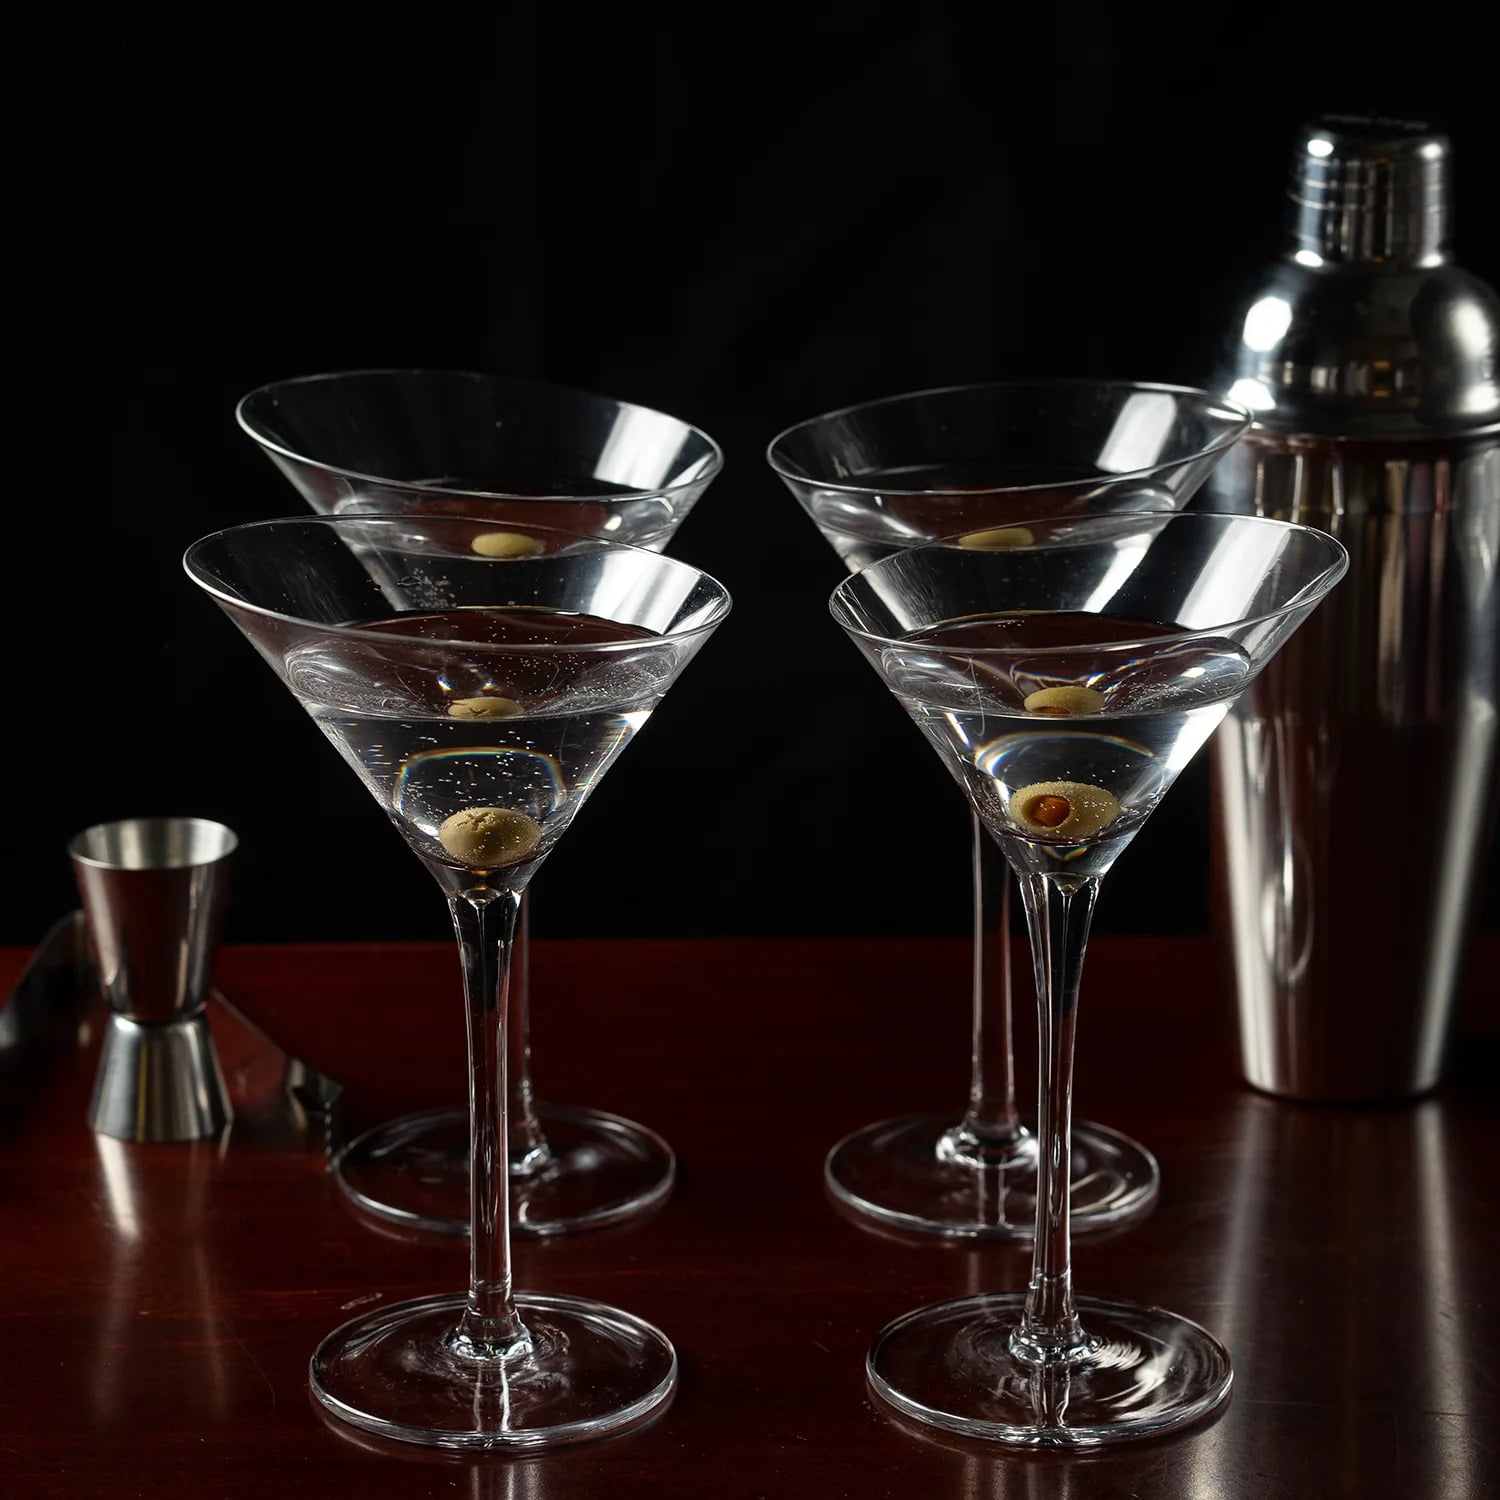 OMITA Martini Glasses Set of 4,Hand Blown Glassware,Cocktail Glasses for  Espresso Martini,Cosmopolit…See more OMITA Martini Glasses Set of 4,Hand